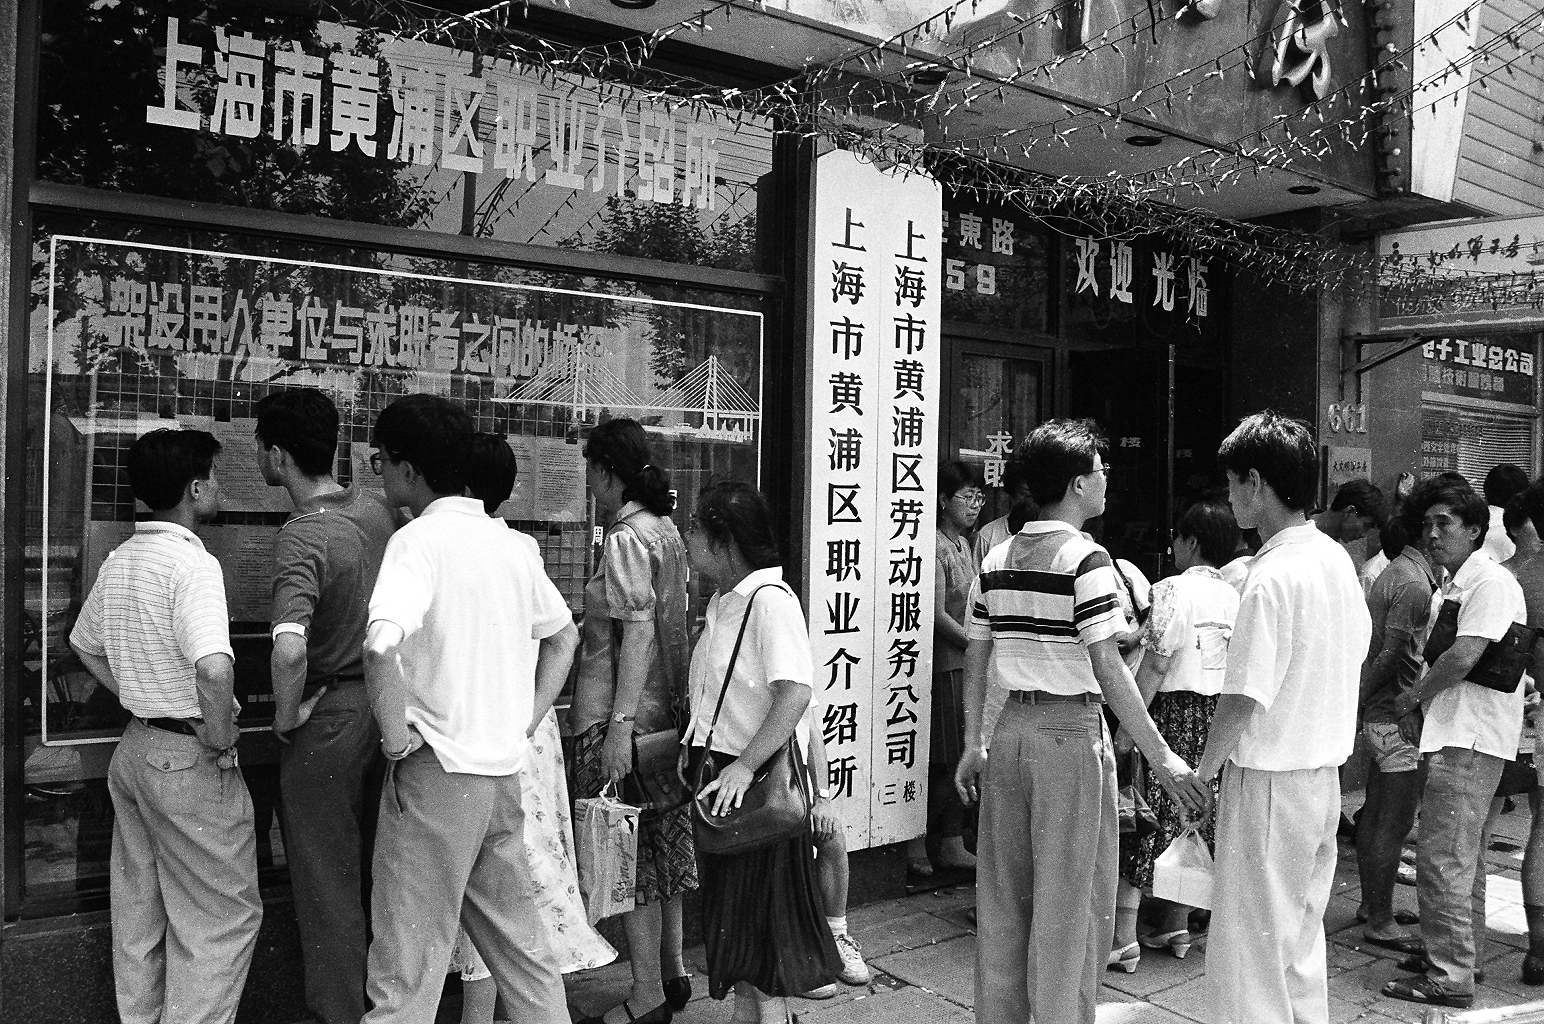 1991年，黄浦区职业介绍所在上海率先挂牌成立，在择业者与用人单位之间架起沟通桥梁，为调节劳动力资源的合理配置，促进劳动力和人才市埸发展注入活力（朱岚摄）.JPG